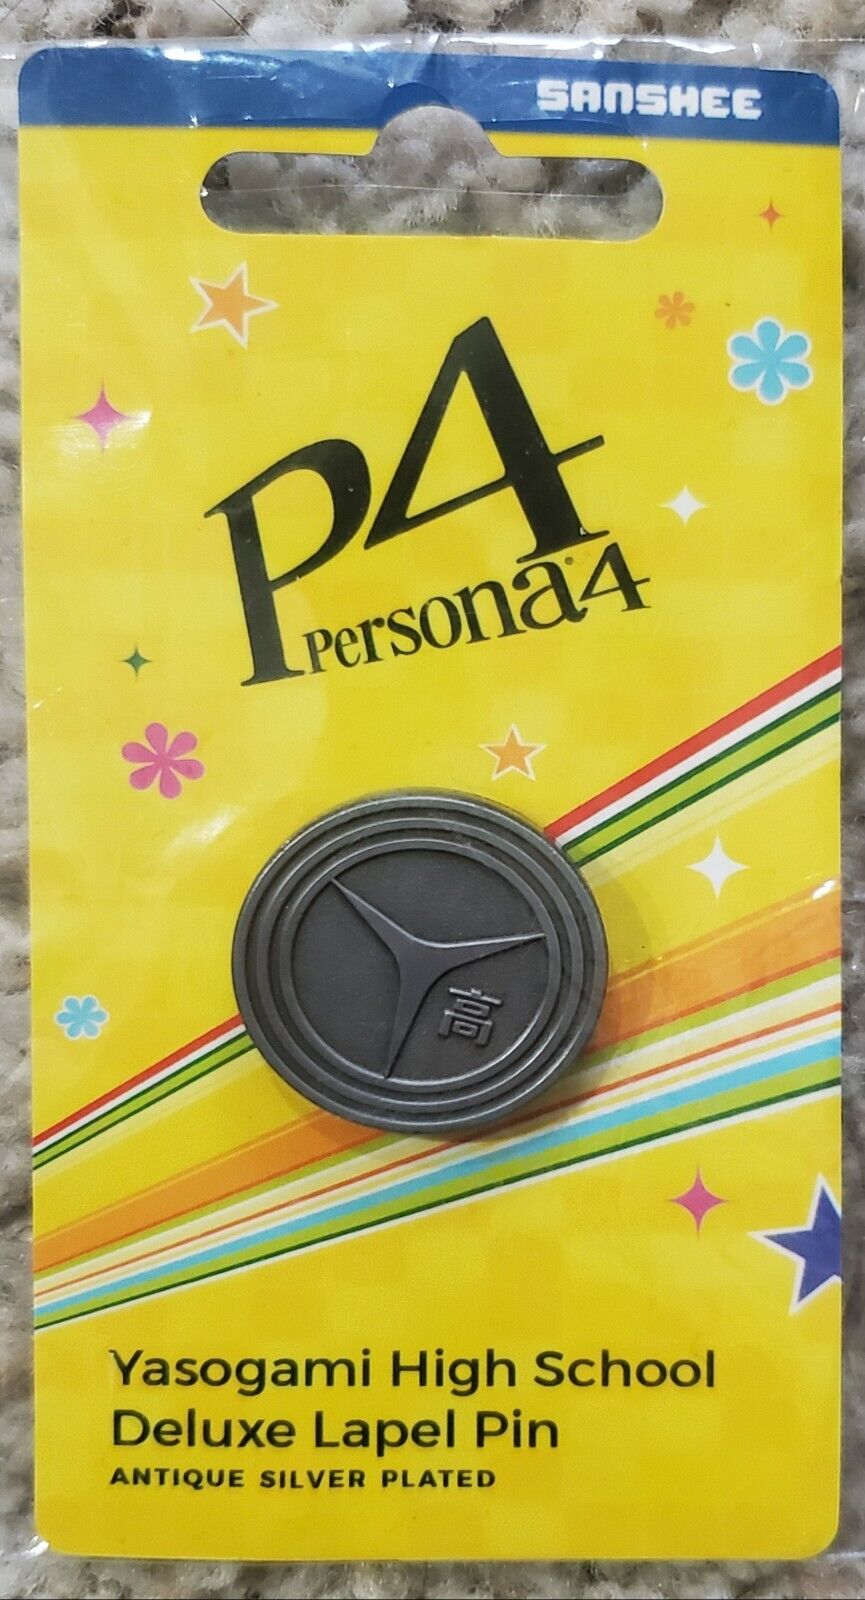 Persona 4 Golden Yasogami High School Deluxe Metal Lapel Pin Sanshee Brand New